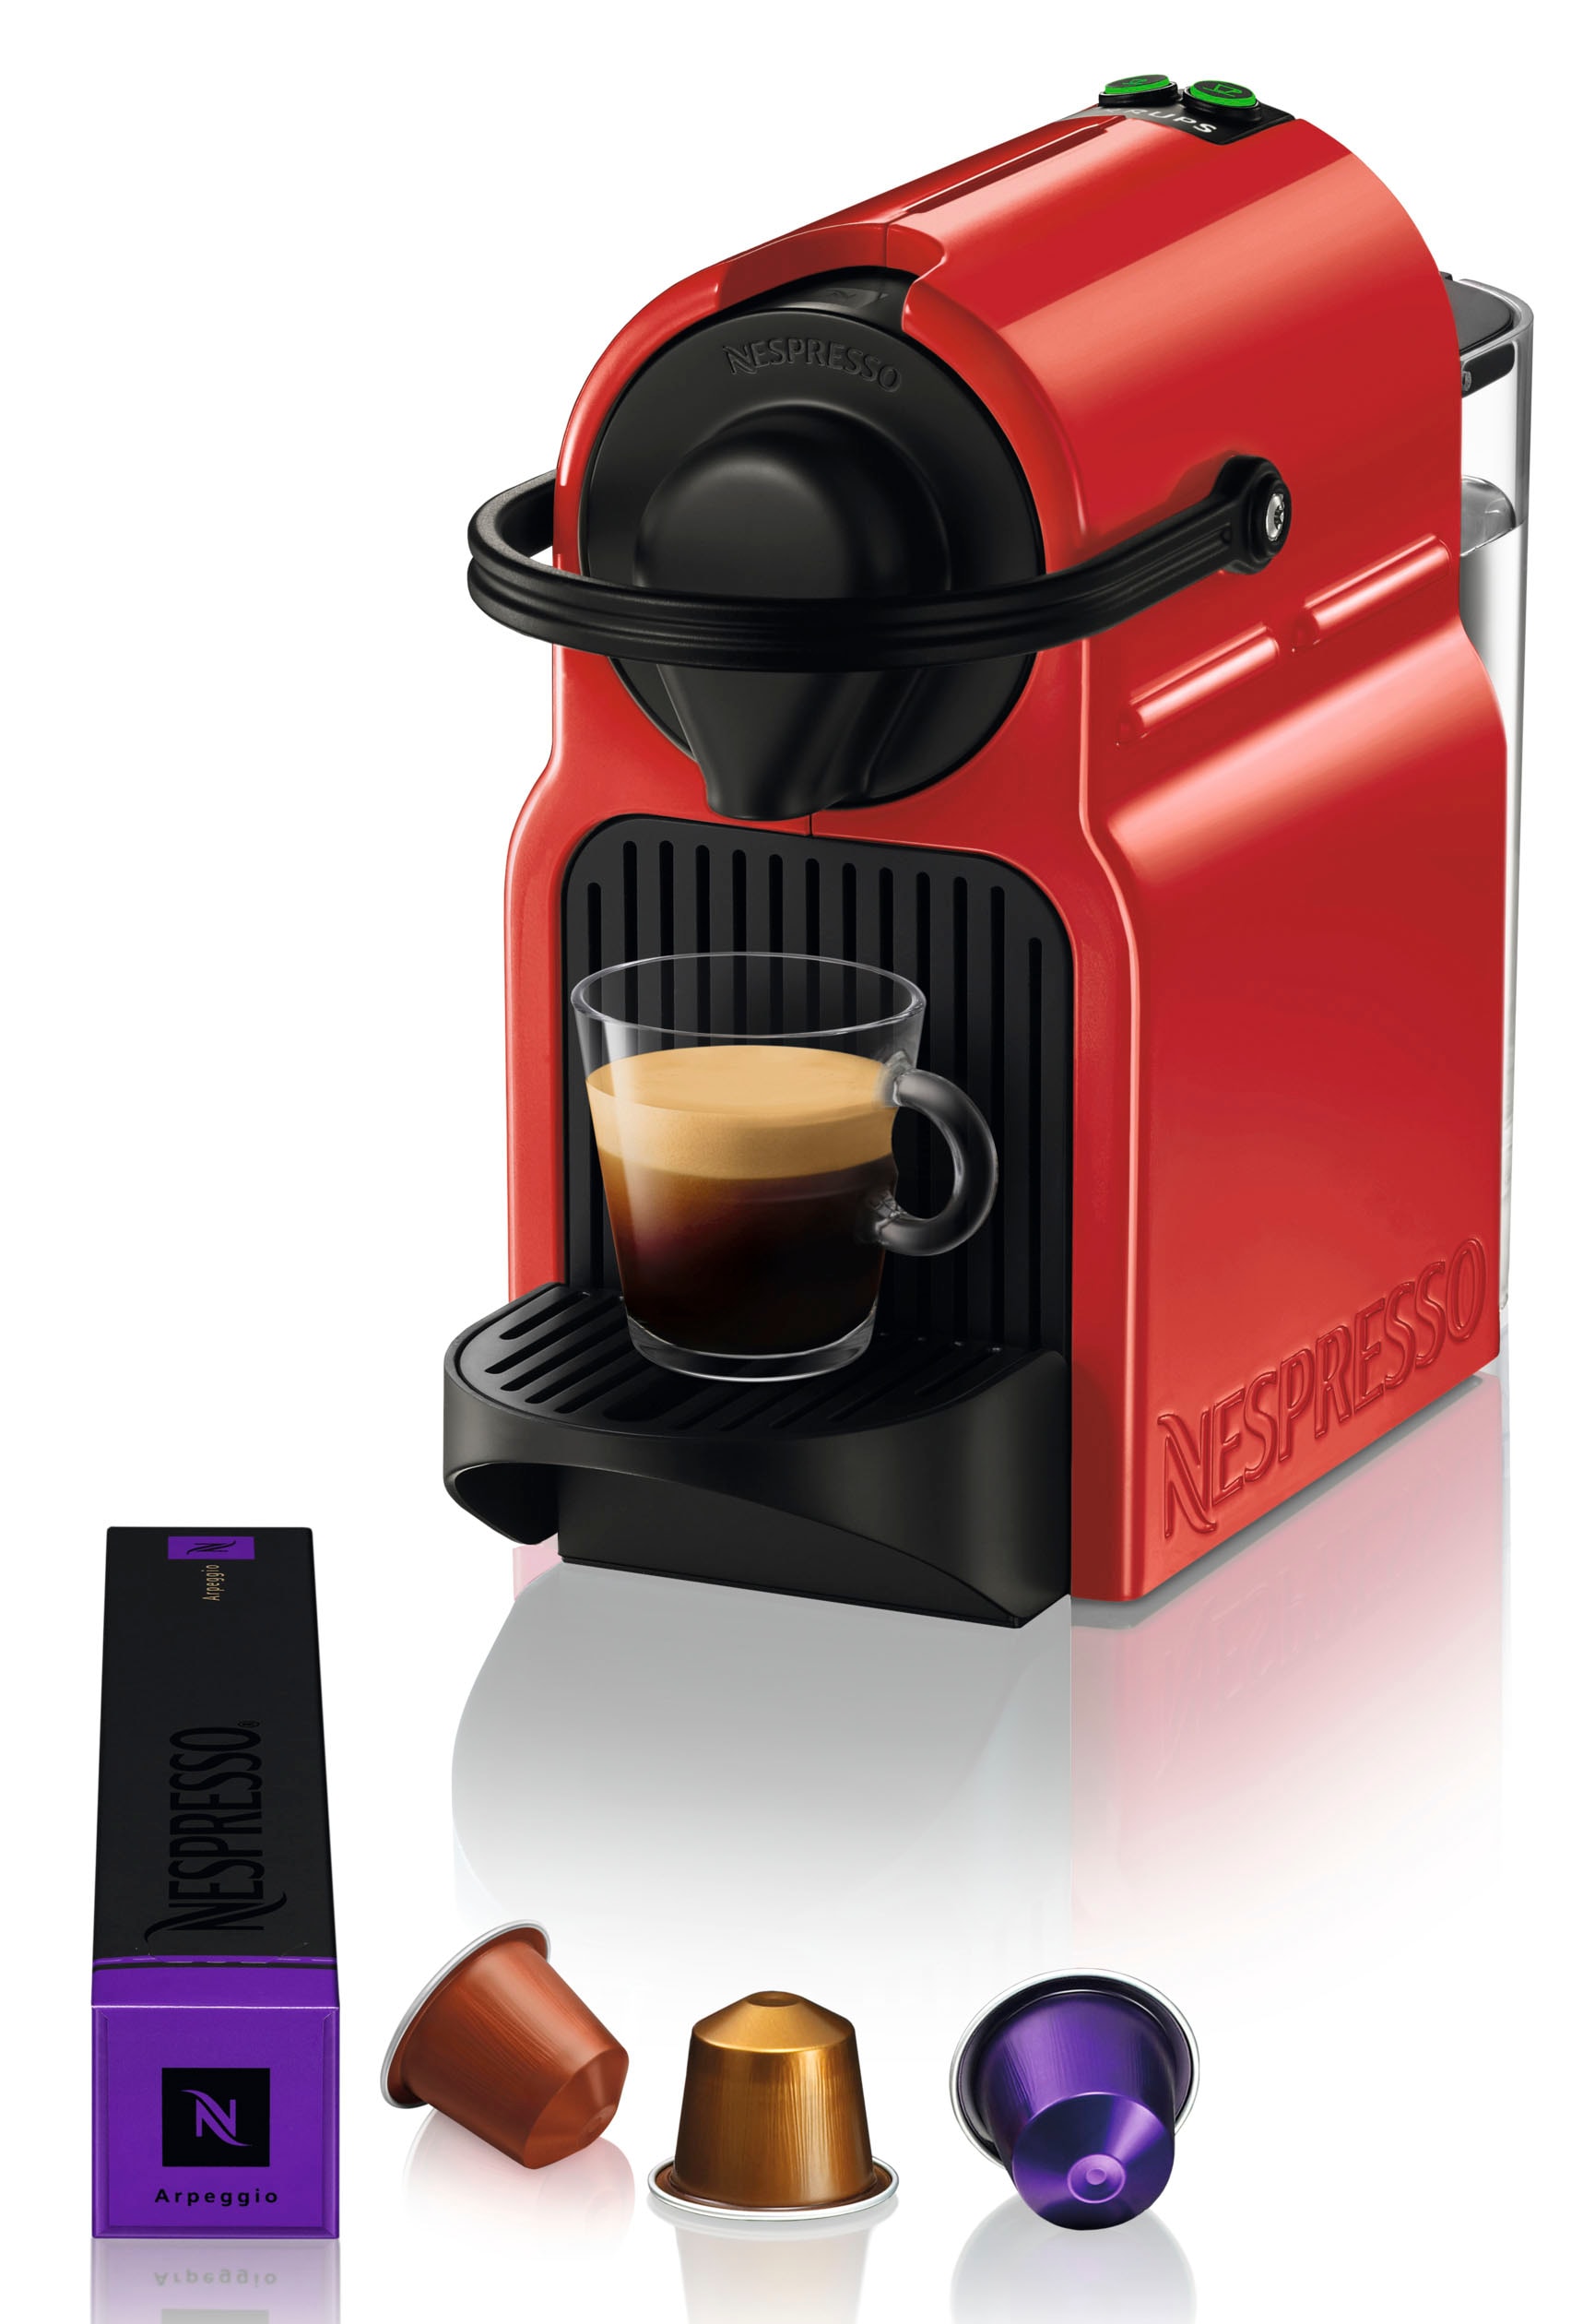 Nespresso Kapselmaschine "XN1005 Inissia von Krups", Kaffeemenge einstellbar, inkl. Willkommenspaket mit 7 Kapseln